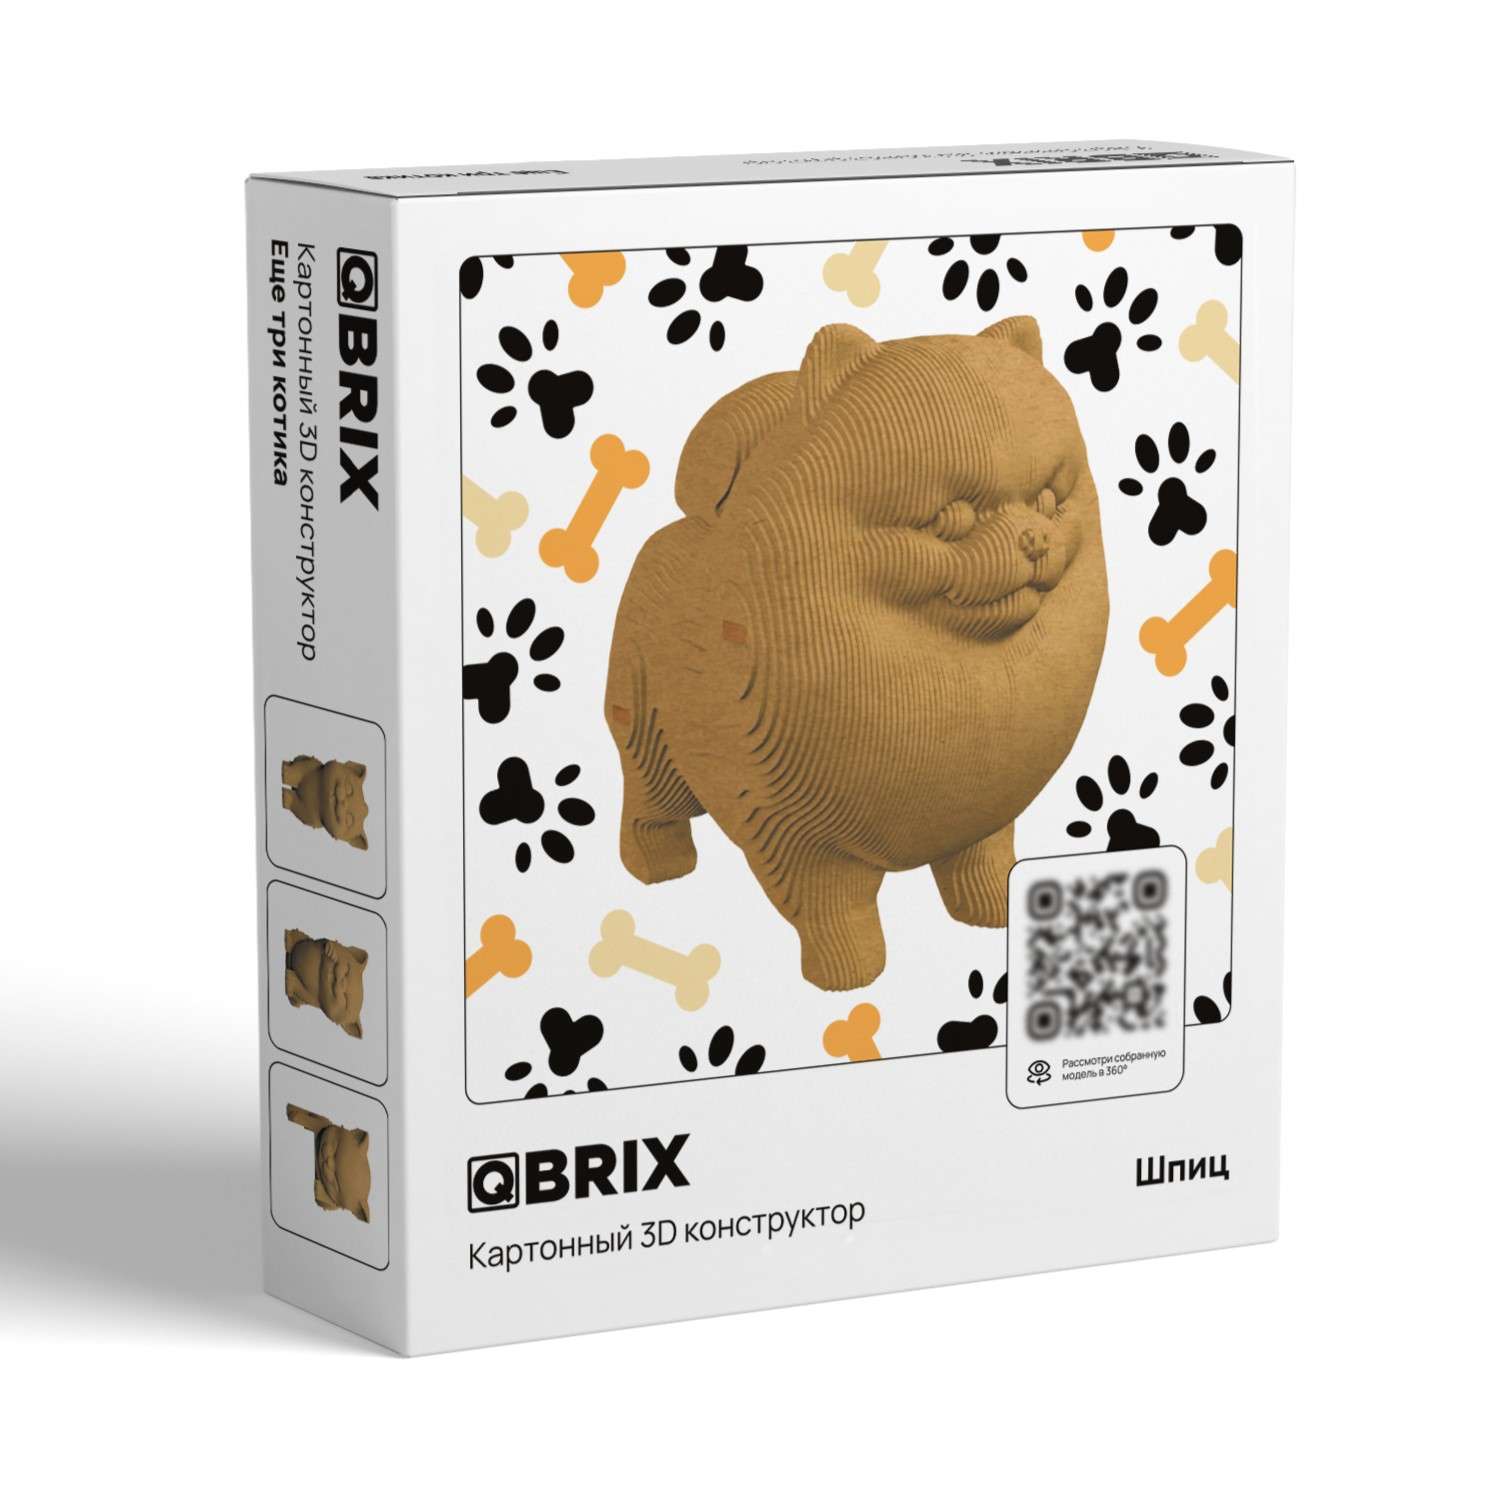 Конструктор QBRIX 3D картонный Шпиц 20023 20023 - фото 1